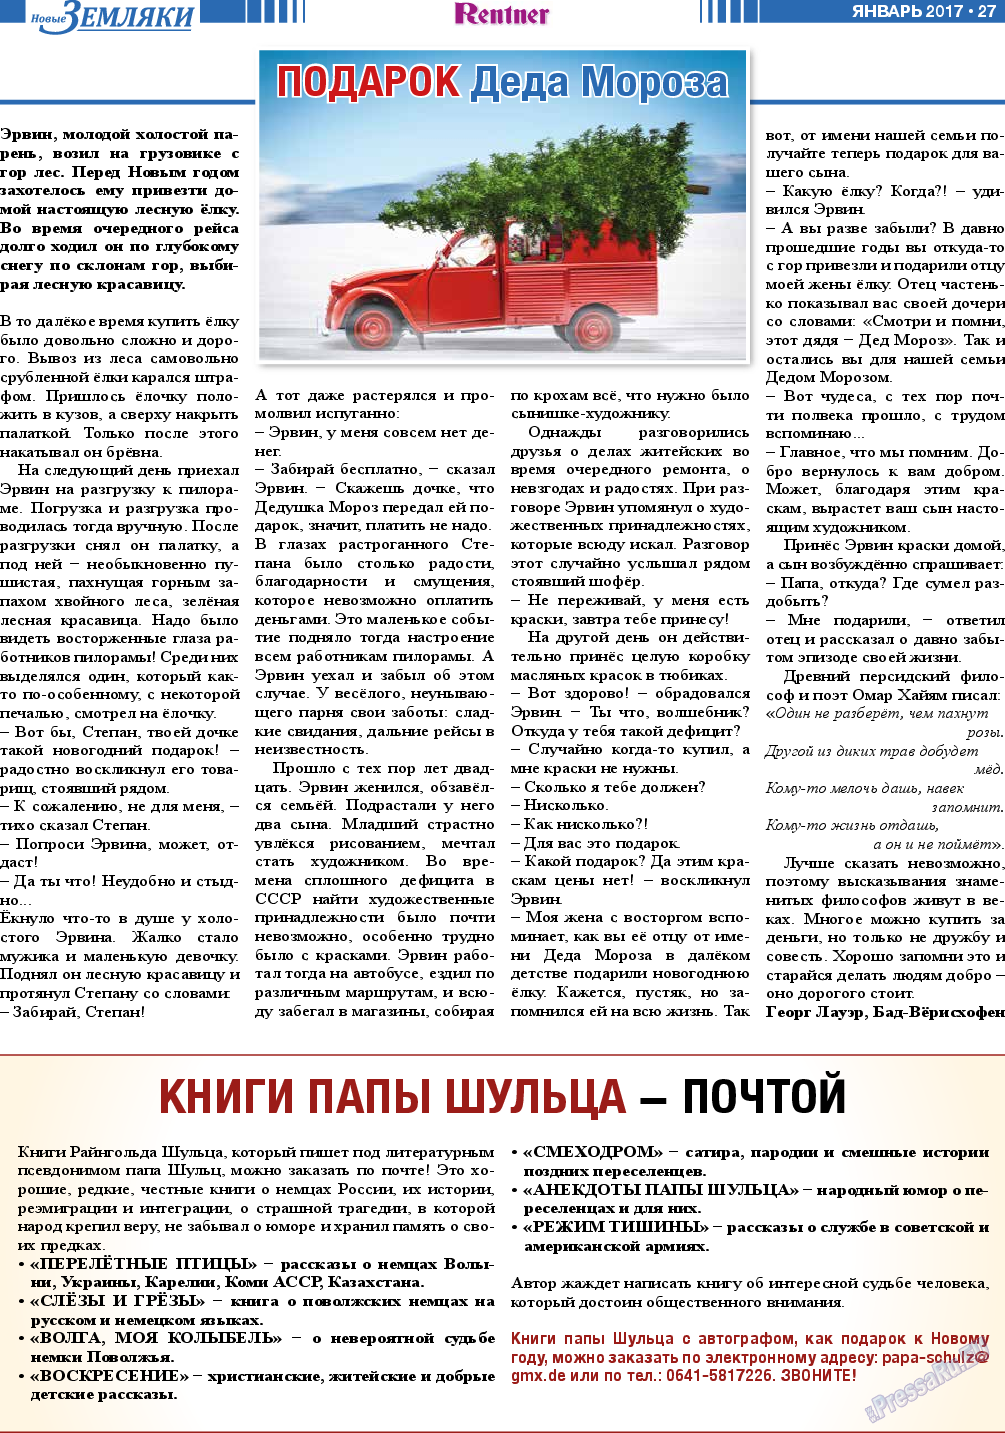 Новые Земляки, газета. 2017 №1 стр.27